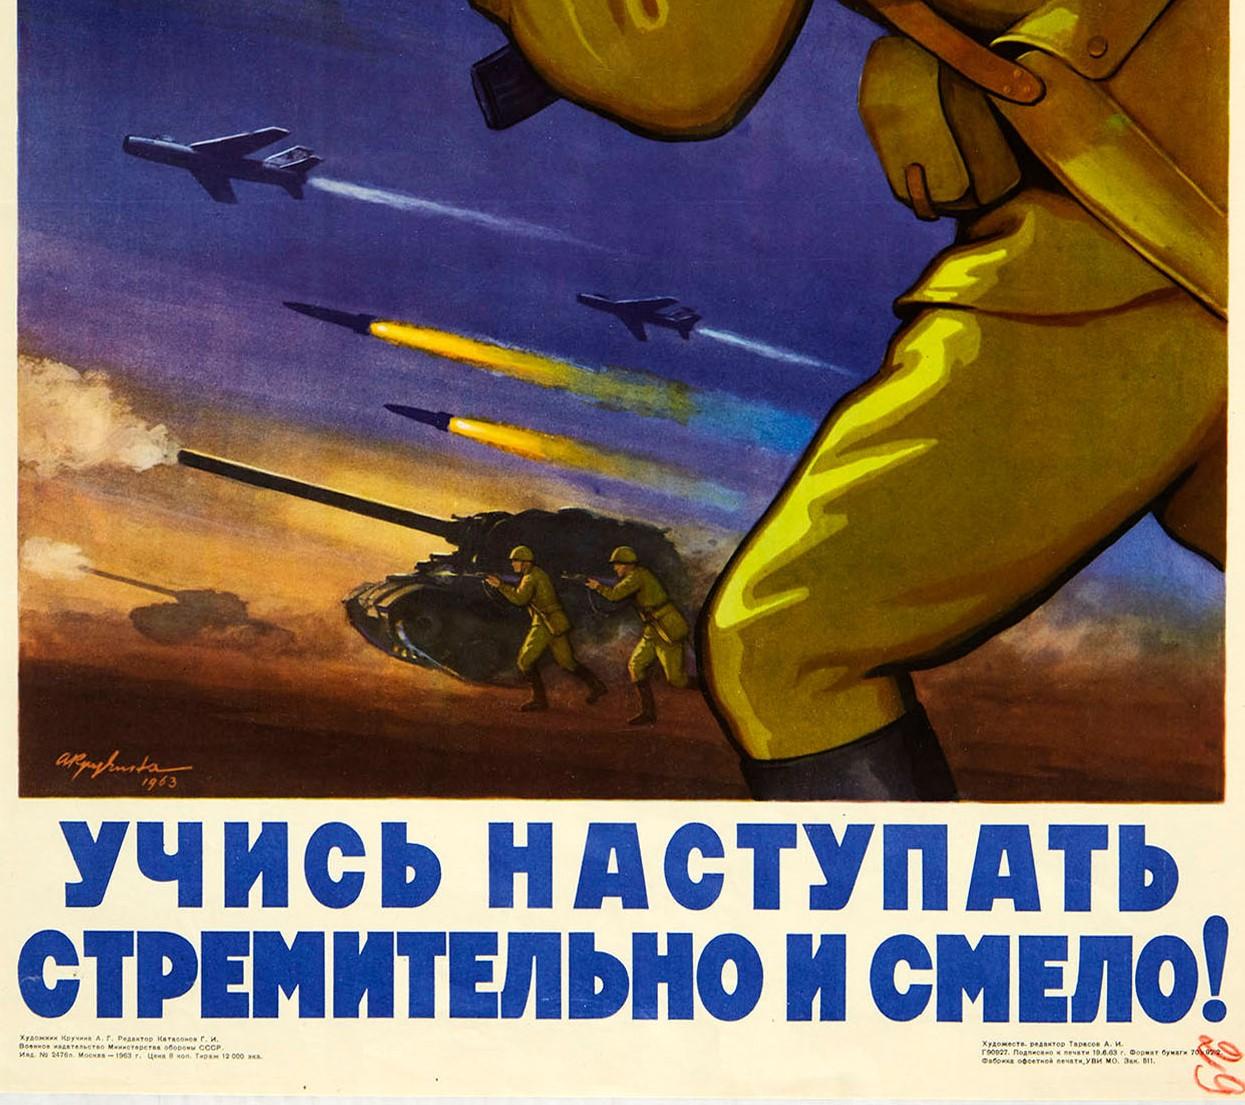 Affiche vintage originale de propagande soviétique pendant la guerre froide, apprendre à progresser...! - Noir Print par A. Kruchina